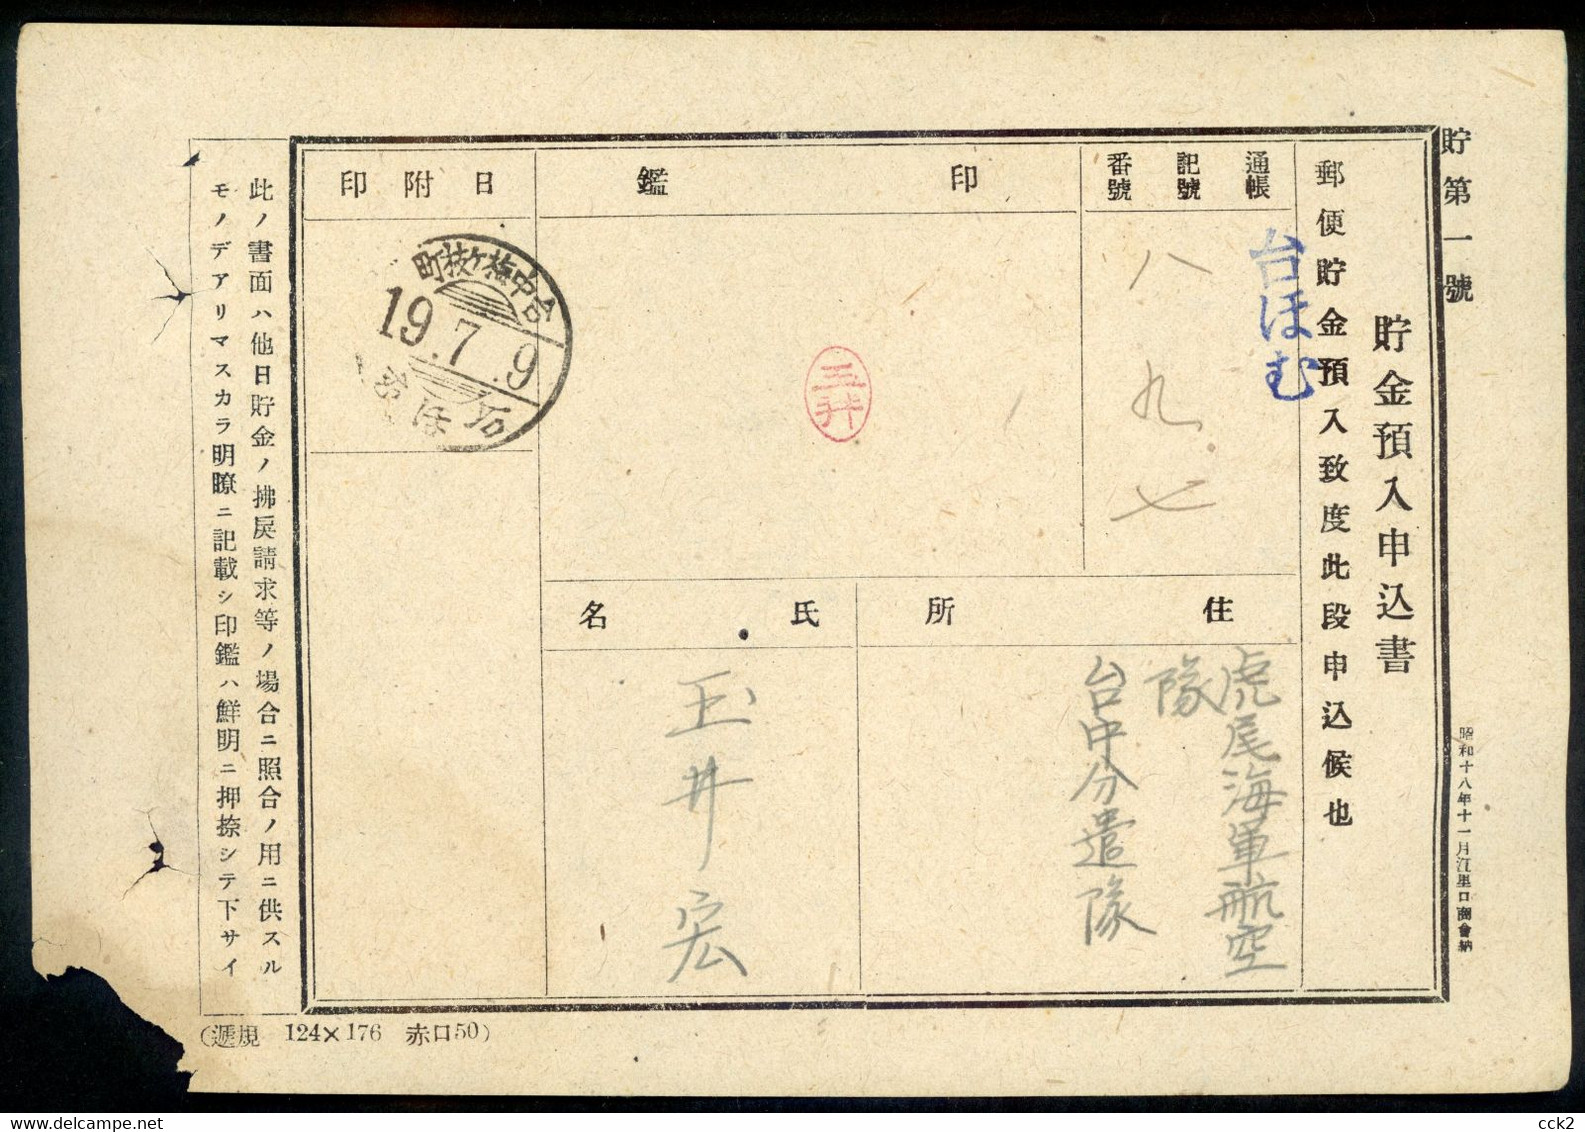 JAPAN OCCUPATION TAIWAN- Postal Convenience Savings Fund Advance Deposit Application Form (1) - 1945 Japanisch Besetzung